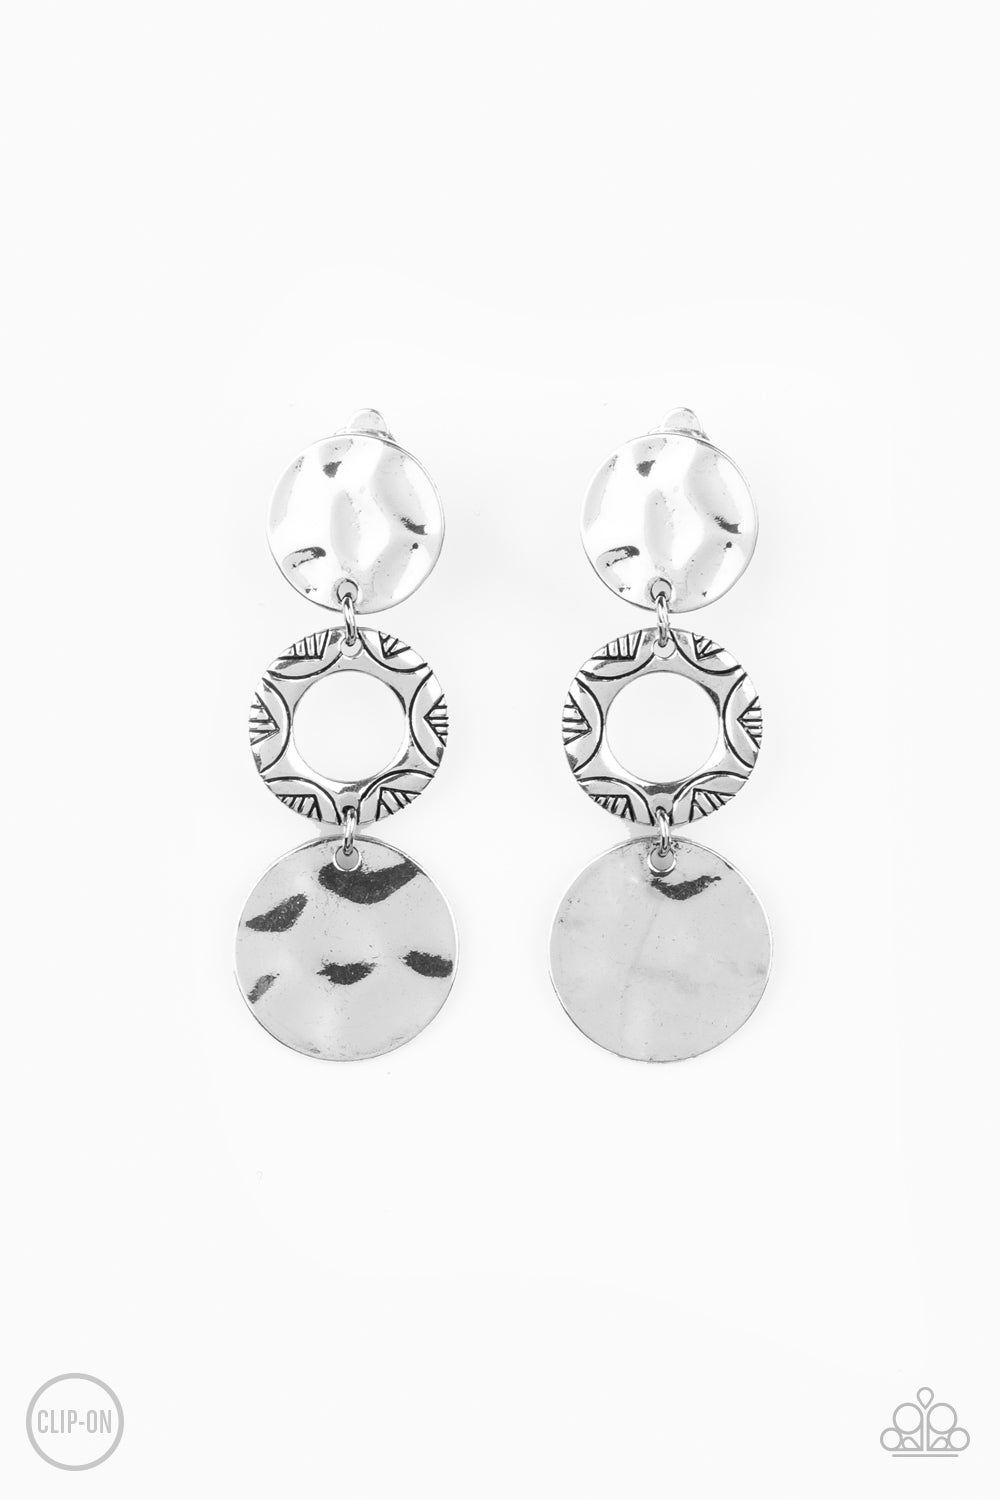 Torrid Trinket Silver
Clip Earrings - Daria's Blings N Things